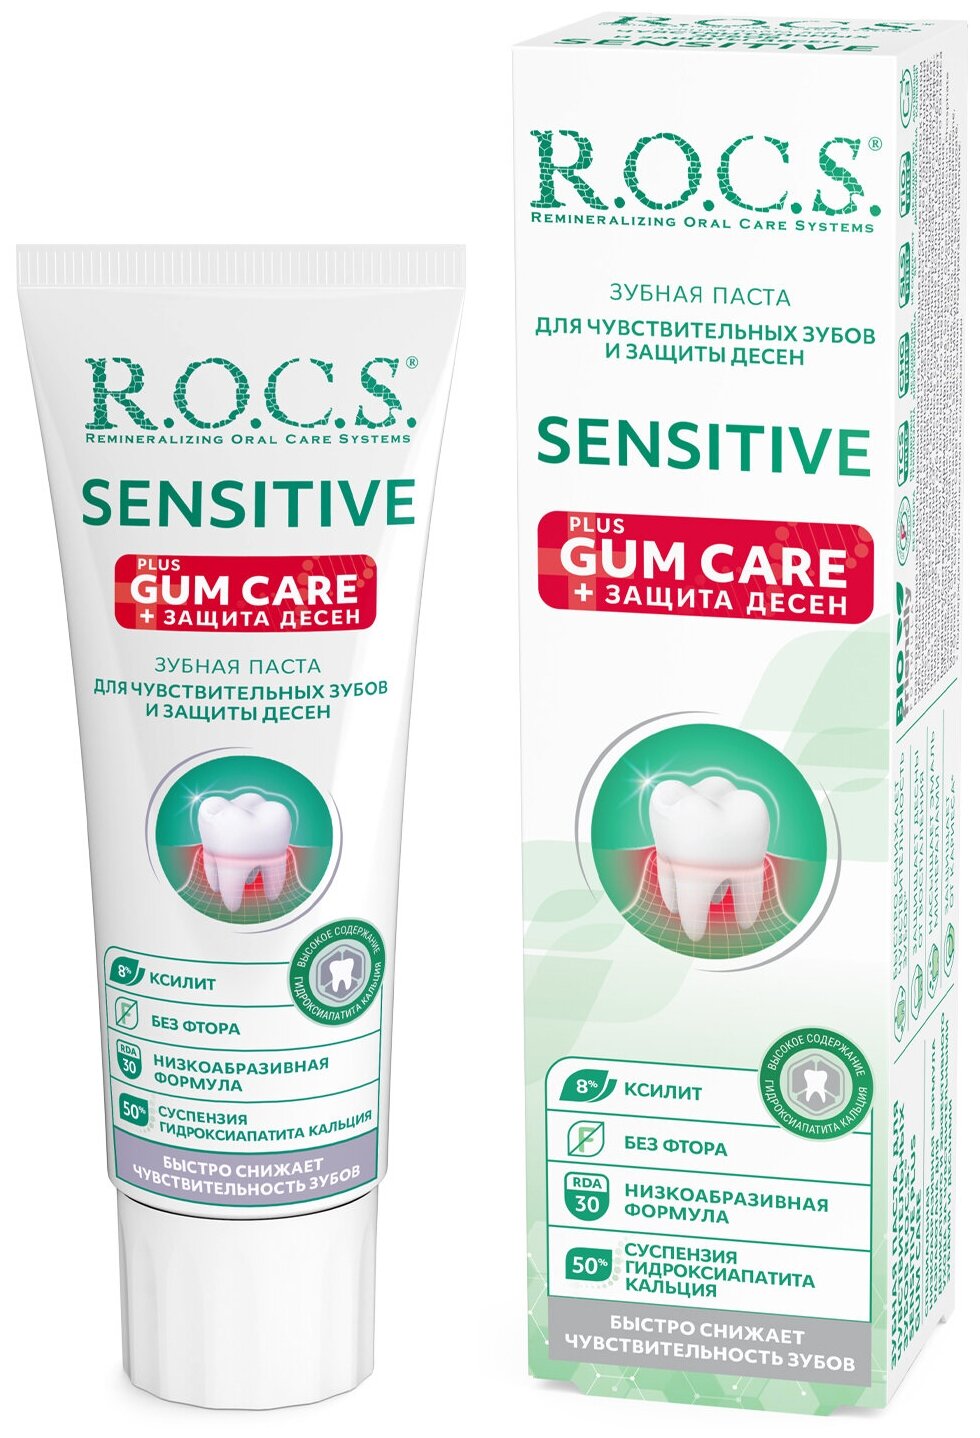 Зубная паста R.O.C.S. Лечебно-профилактическая Sensitive Plus Gum Care, 94 г